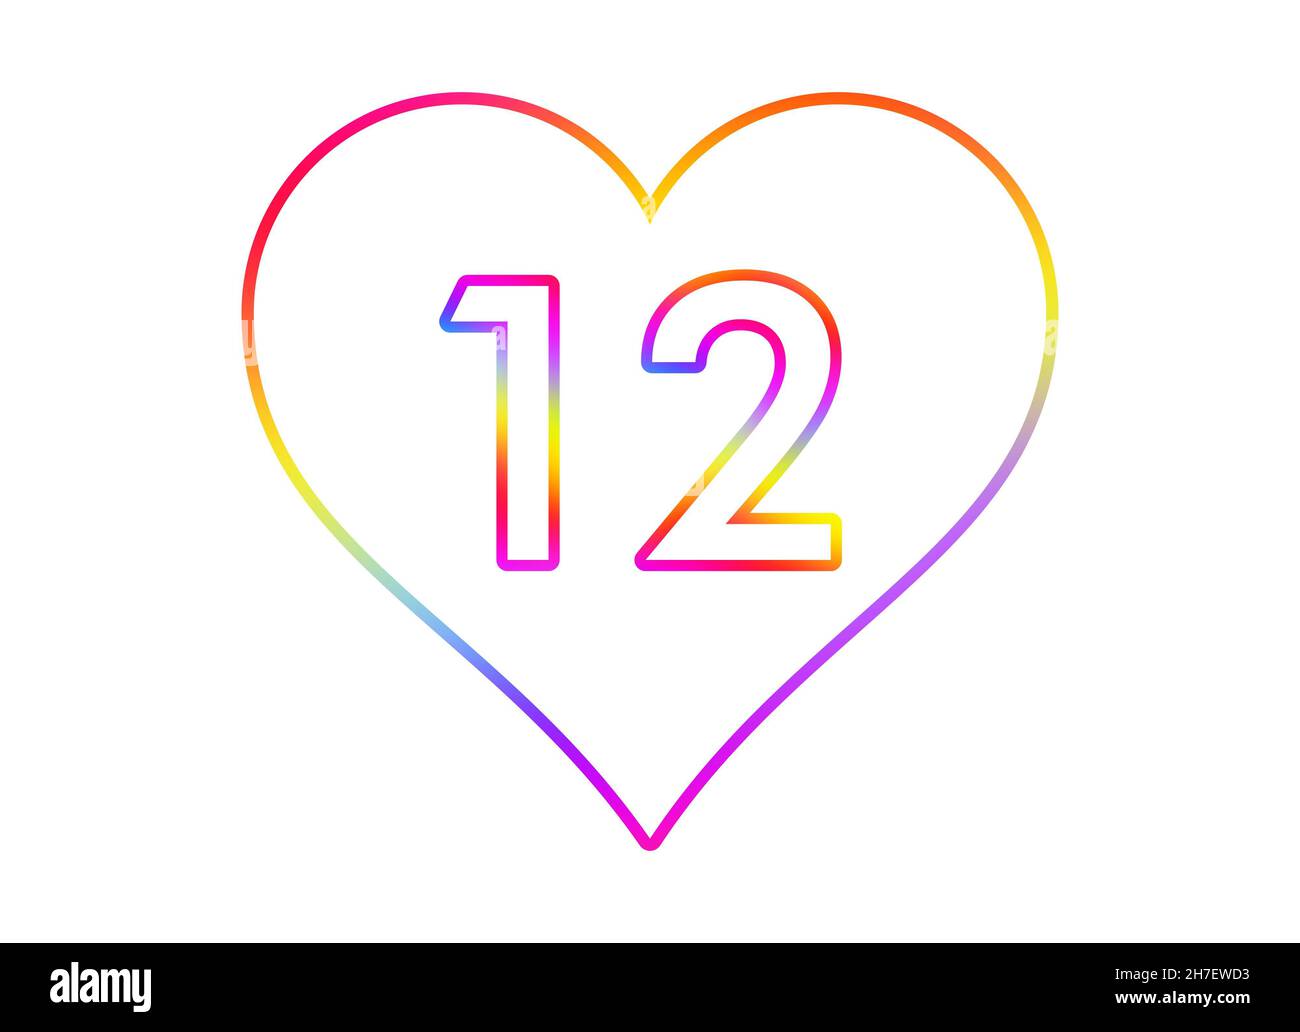 Nummer 12 in ein weißes Herz mit Regenbogenfarben umrandet. Stockfoto